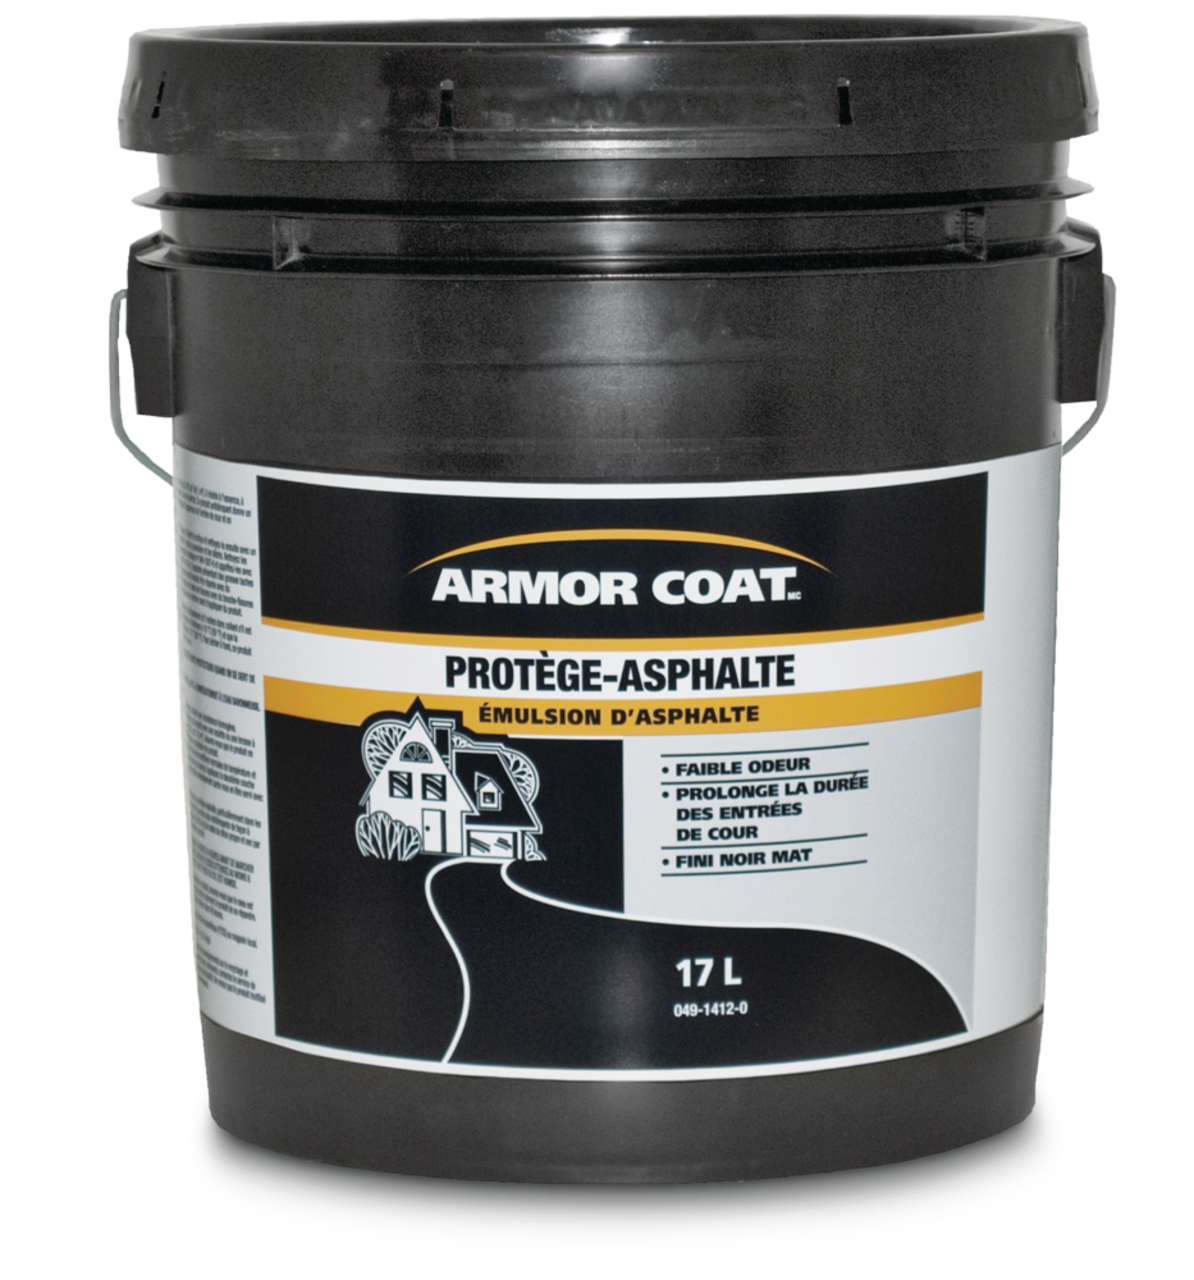 Scellant pour entrée Armor Coat à émulsion d'asphalte, résistant au gaz et  à l'huile, faible odeur, noir mat, 17 L